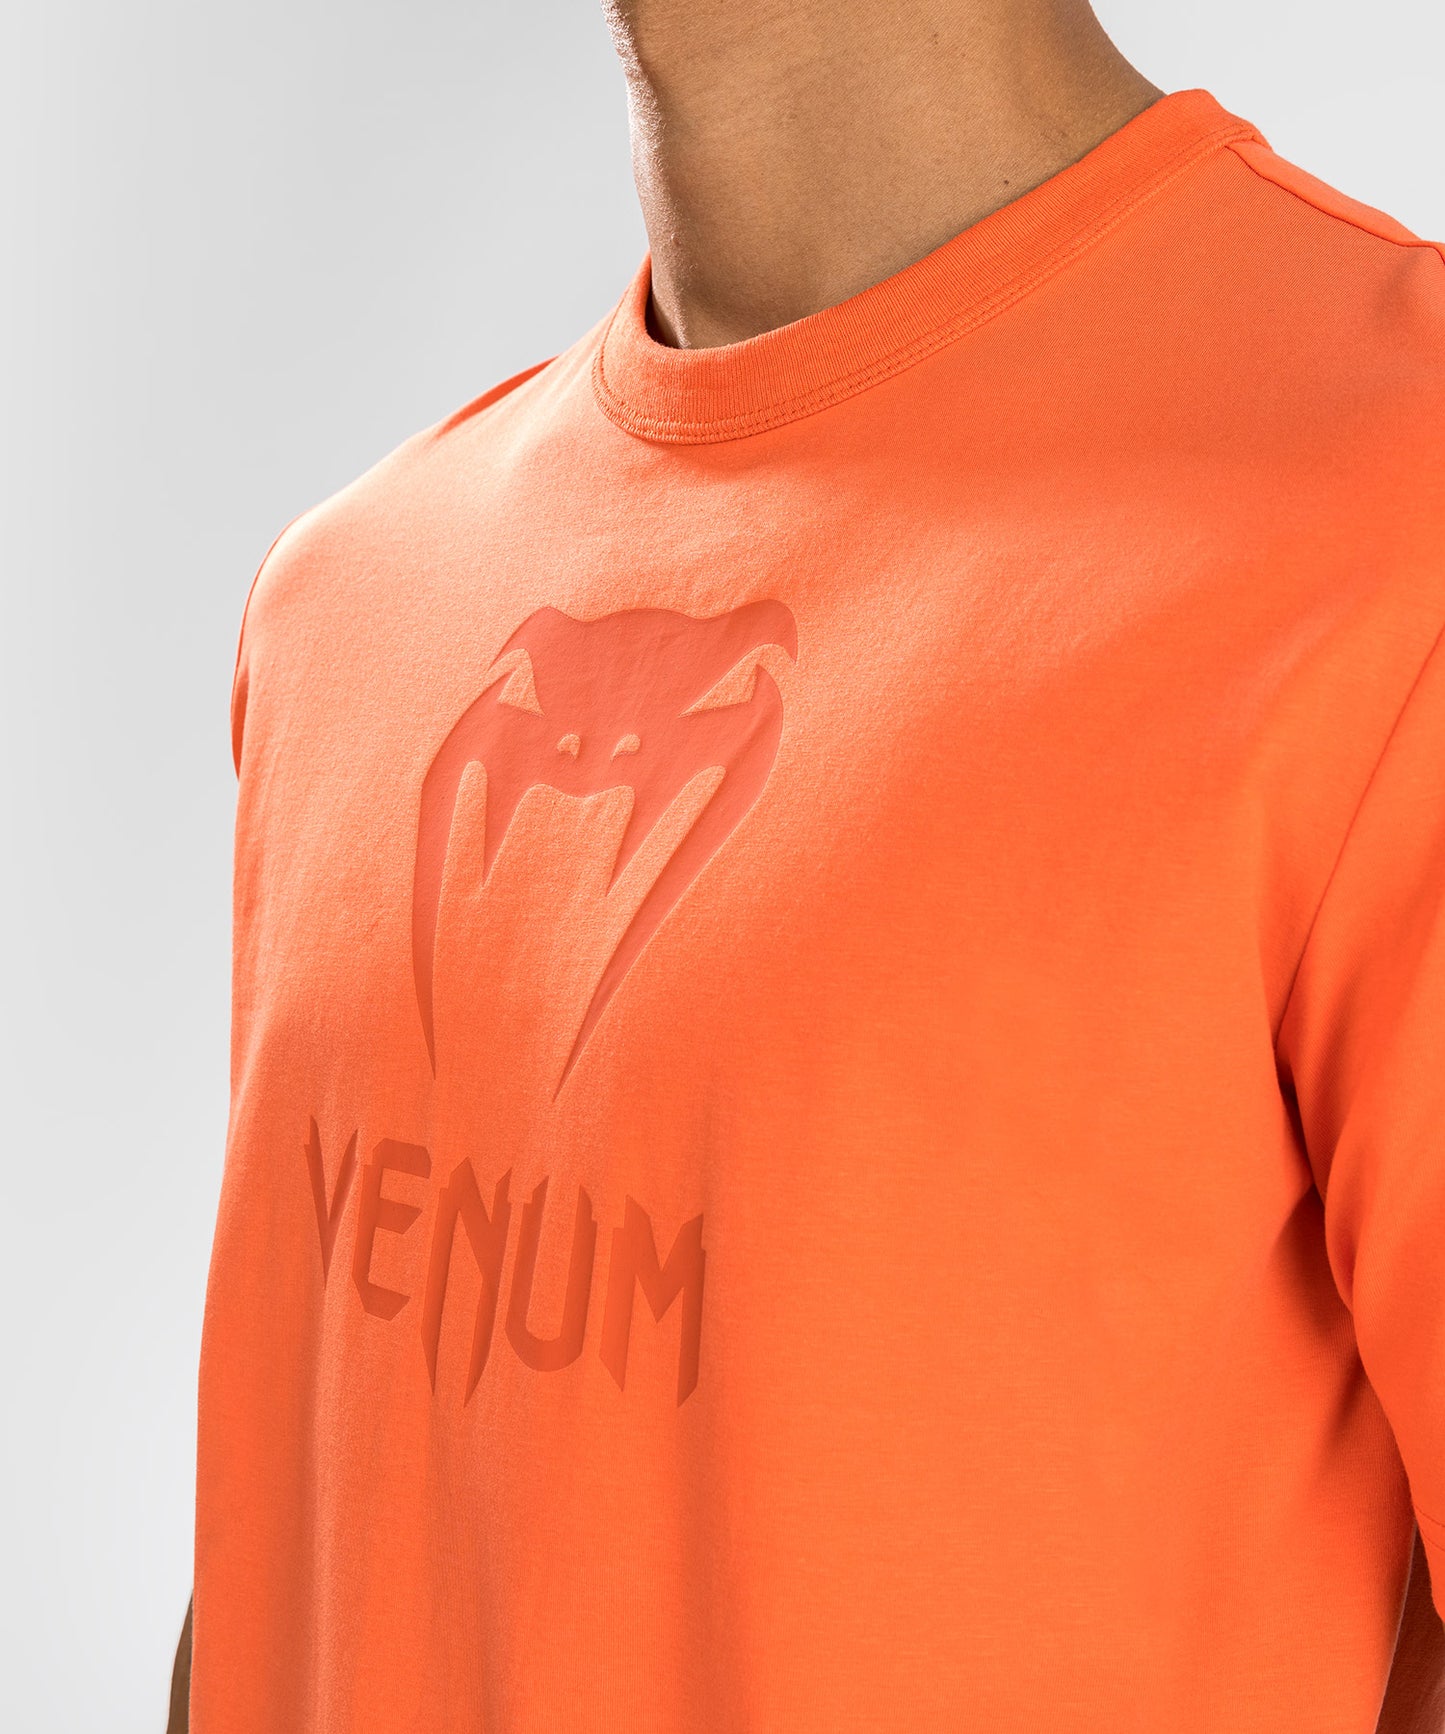 Venum Classic T-Shirt - Orange/Orange